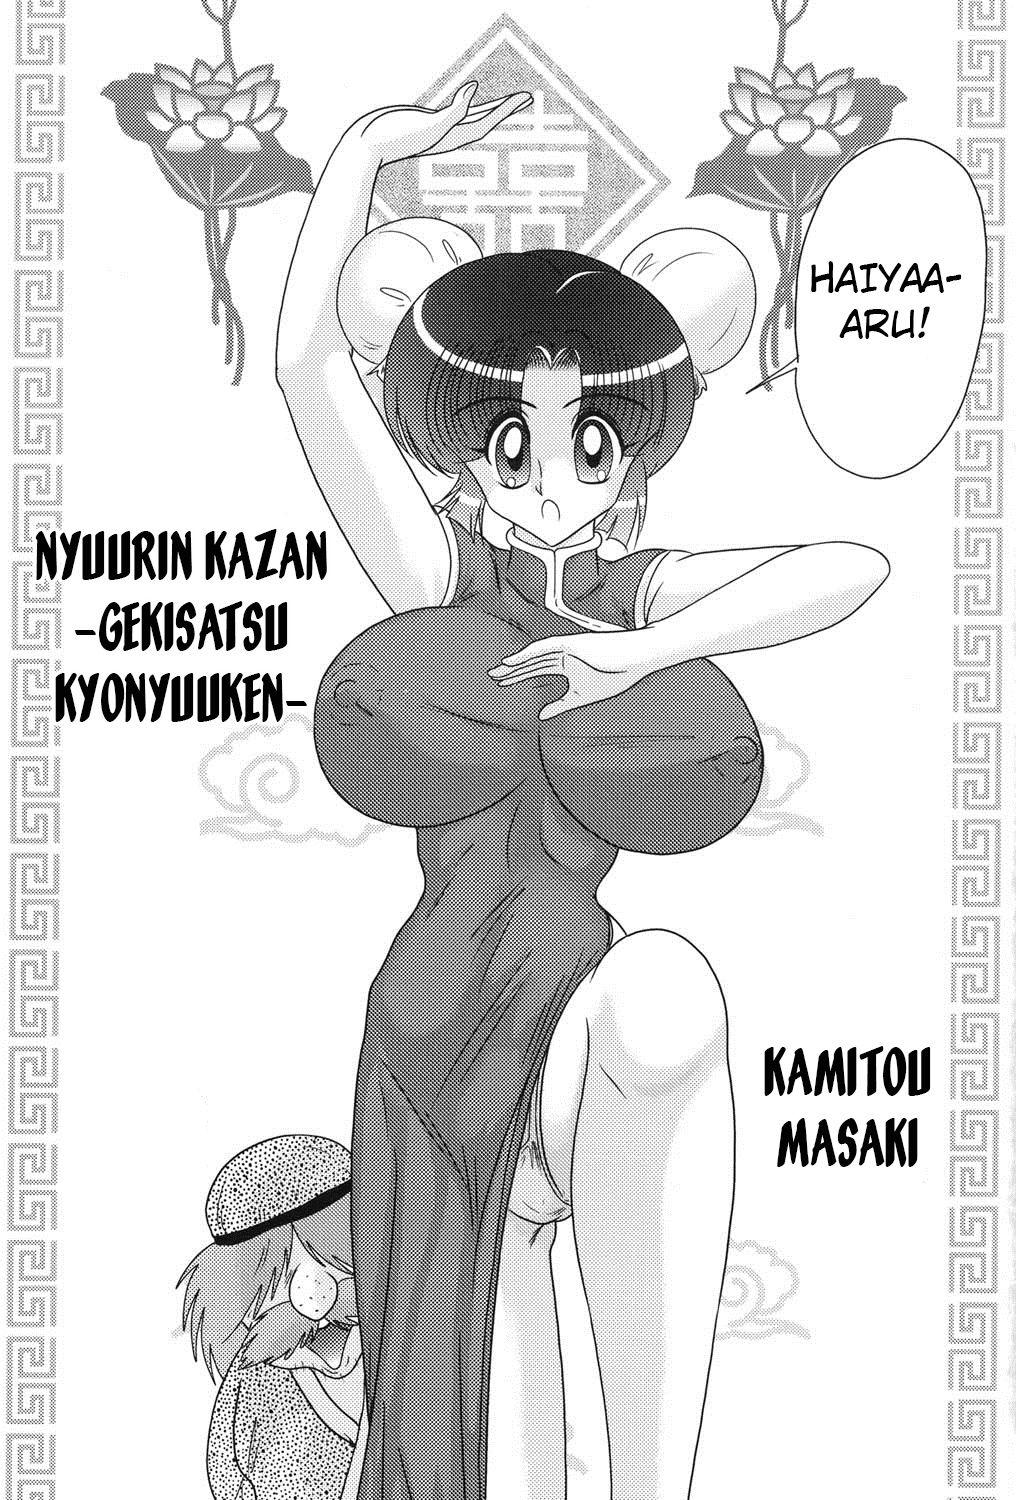 1080p [Kamitou Masaki] Nyuurin Kazan -Gekisatsu Kyonyuuken- Ch. 1-2 [English] [CoC] Gay Shop - Page 2